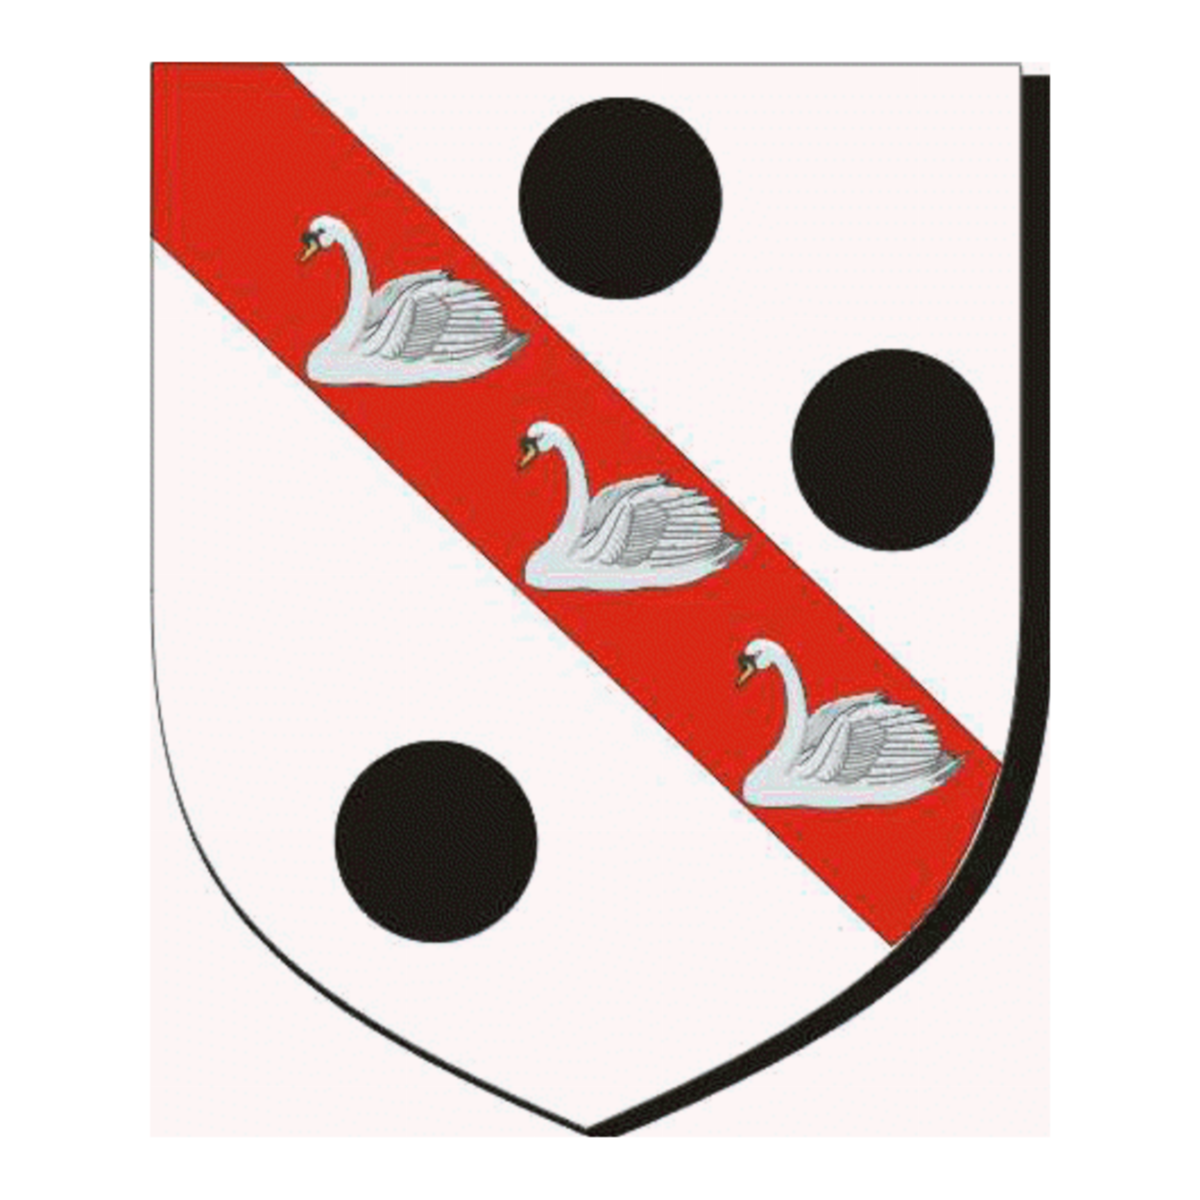 Wappen der FamilieAbbott